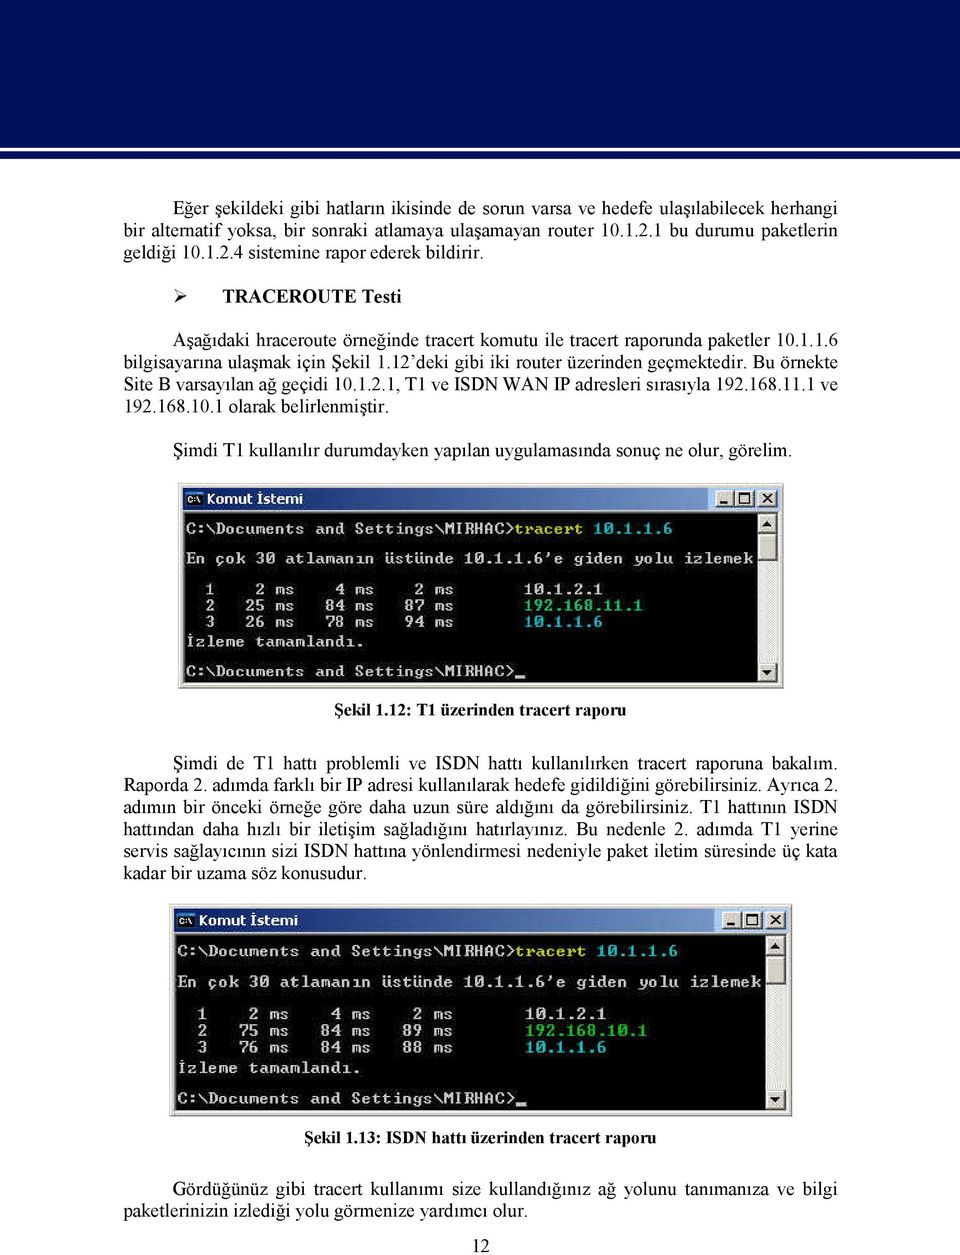 Bu örnekte Site B varsayılan ağ geçidi 10.1.2.1, T1 ve ISDN WAN IP adresleri sırasıyla 192.168.11.1 ve 192.168.10.1 olarak belirlenmiştir.